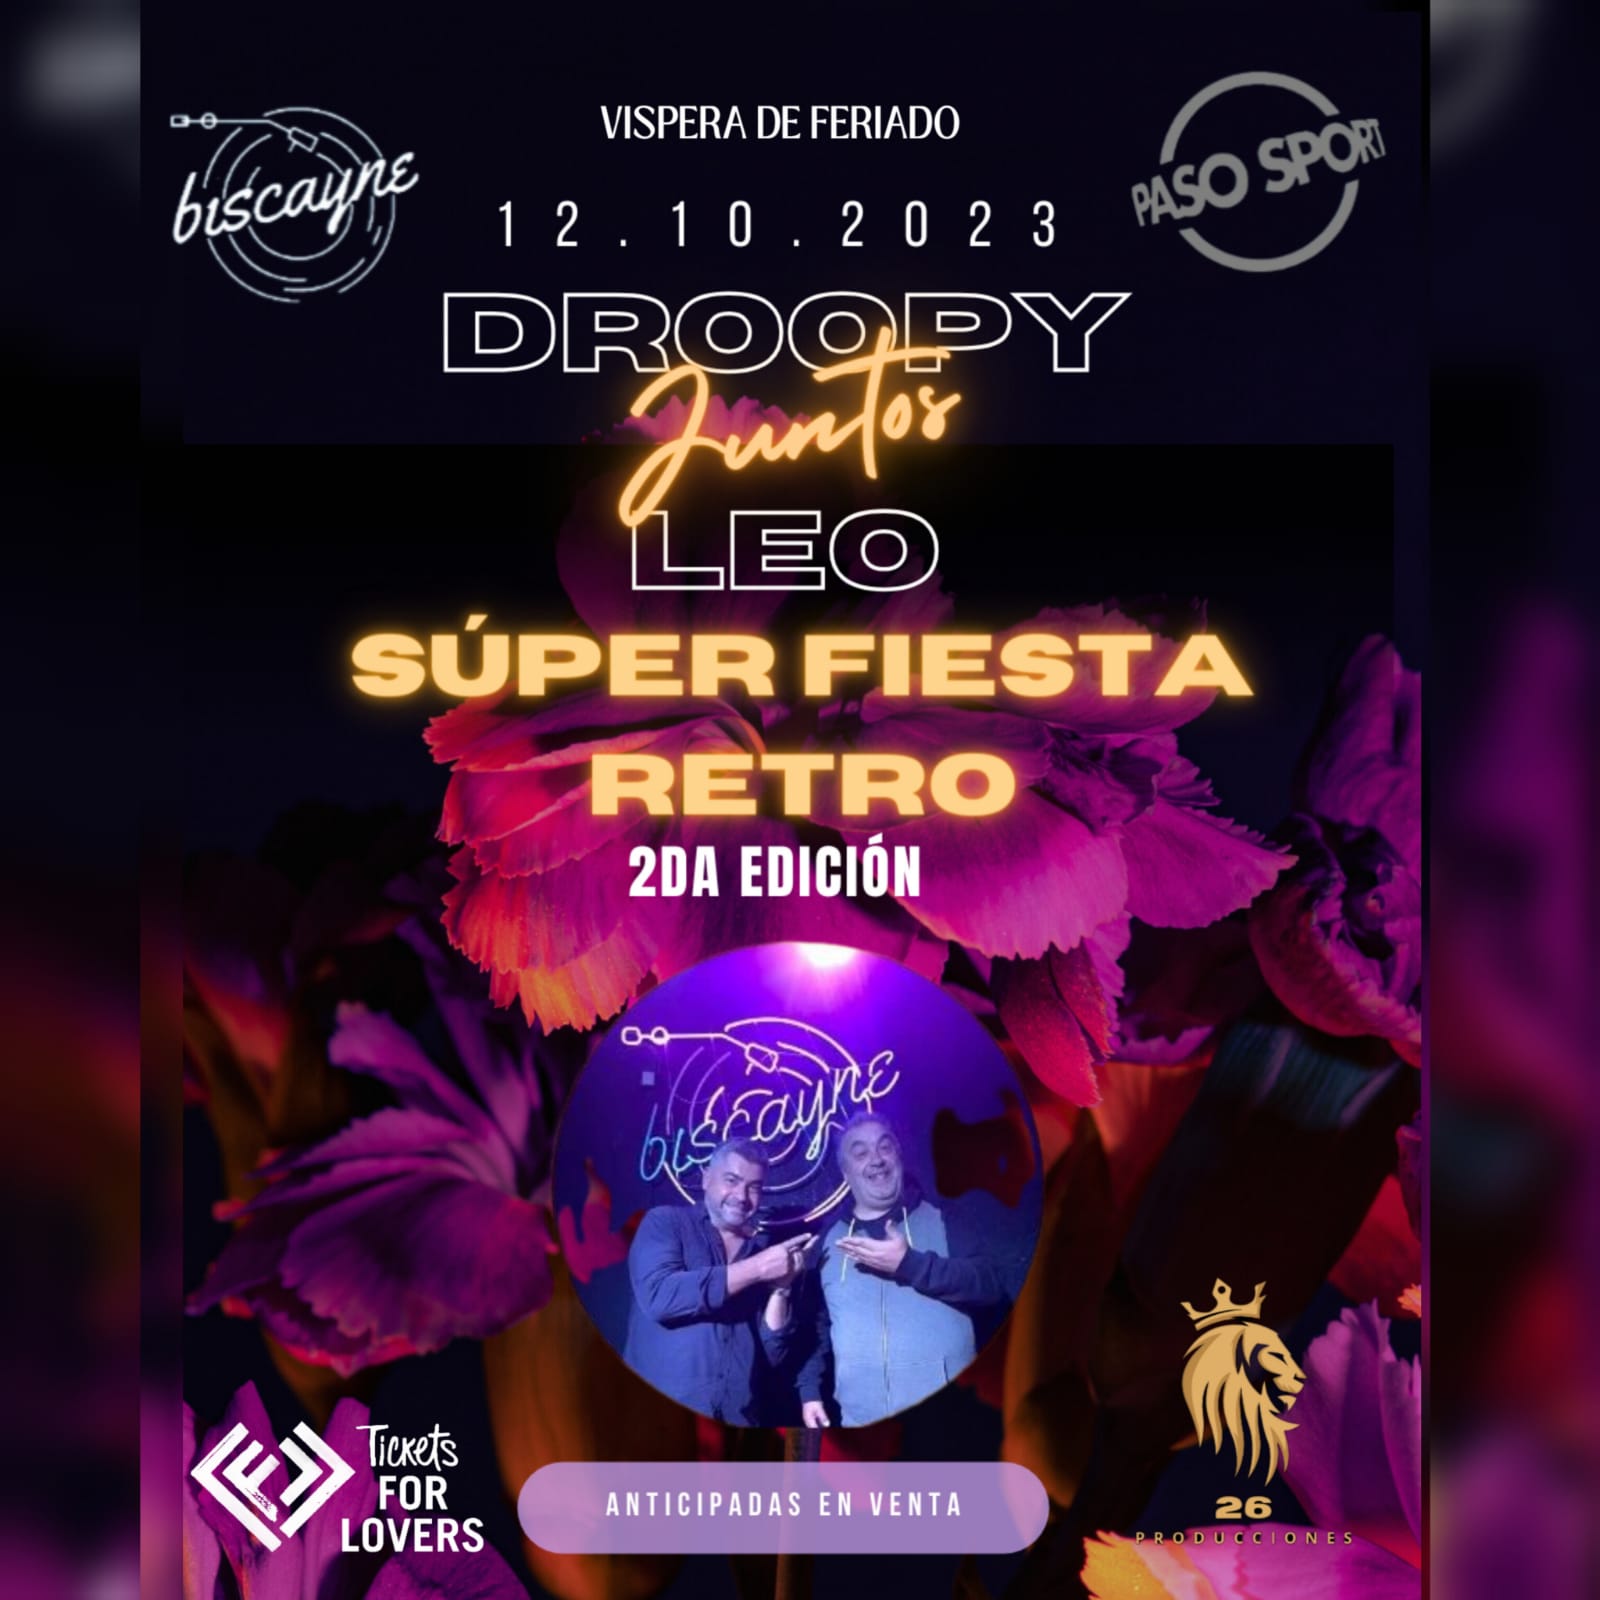  Droopy y Leo juntos otra vez - Super Fiesta Retro - 2da Edicion 